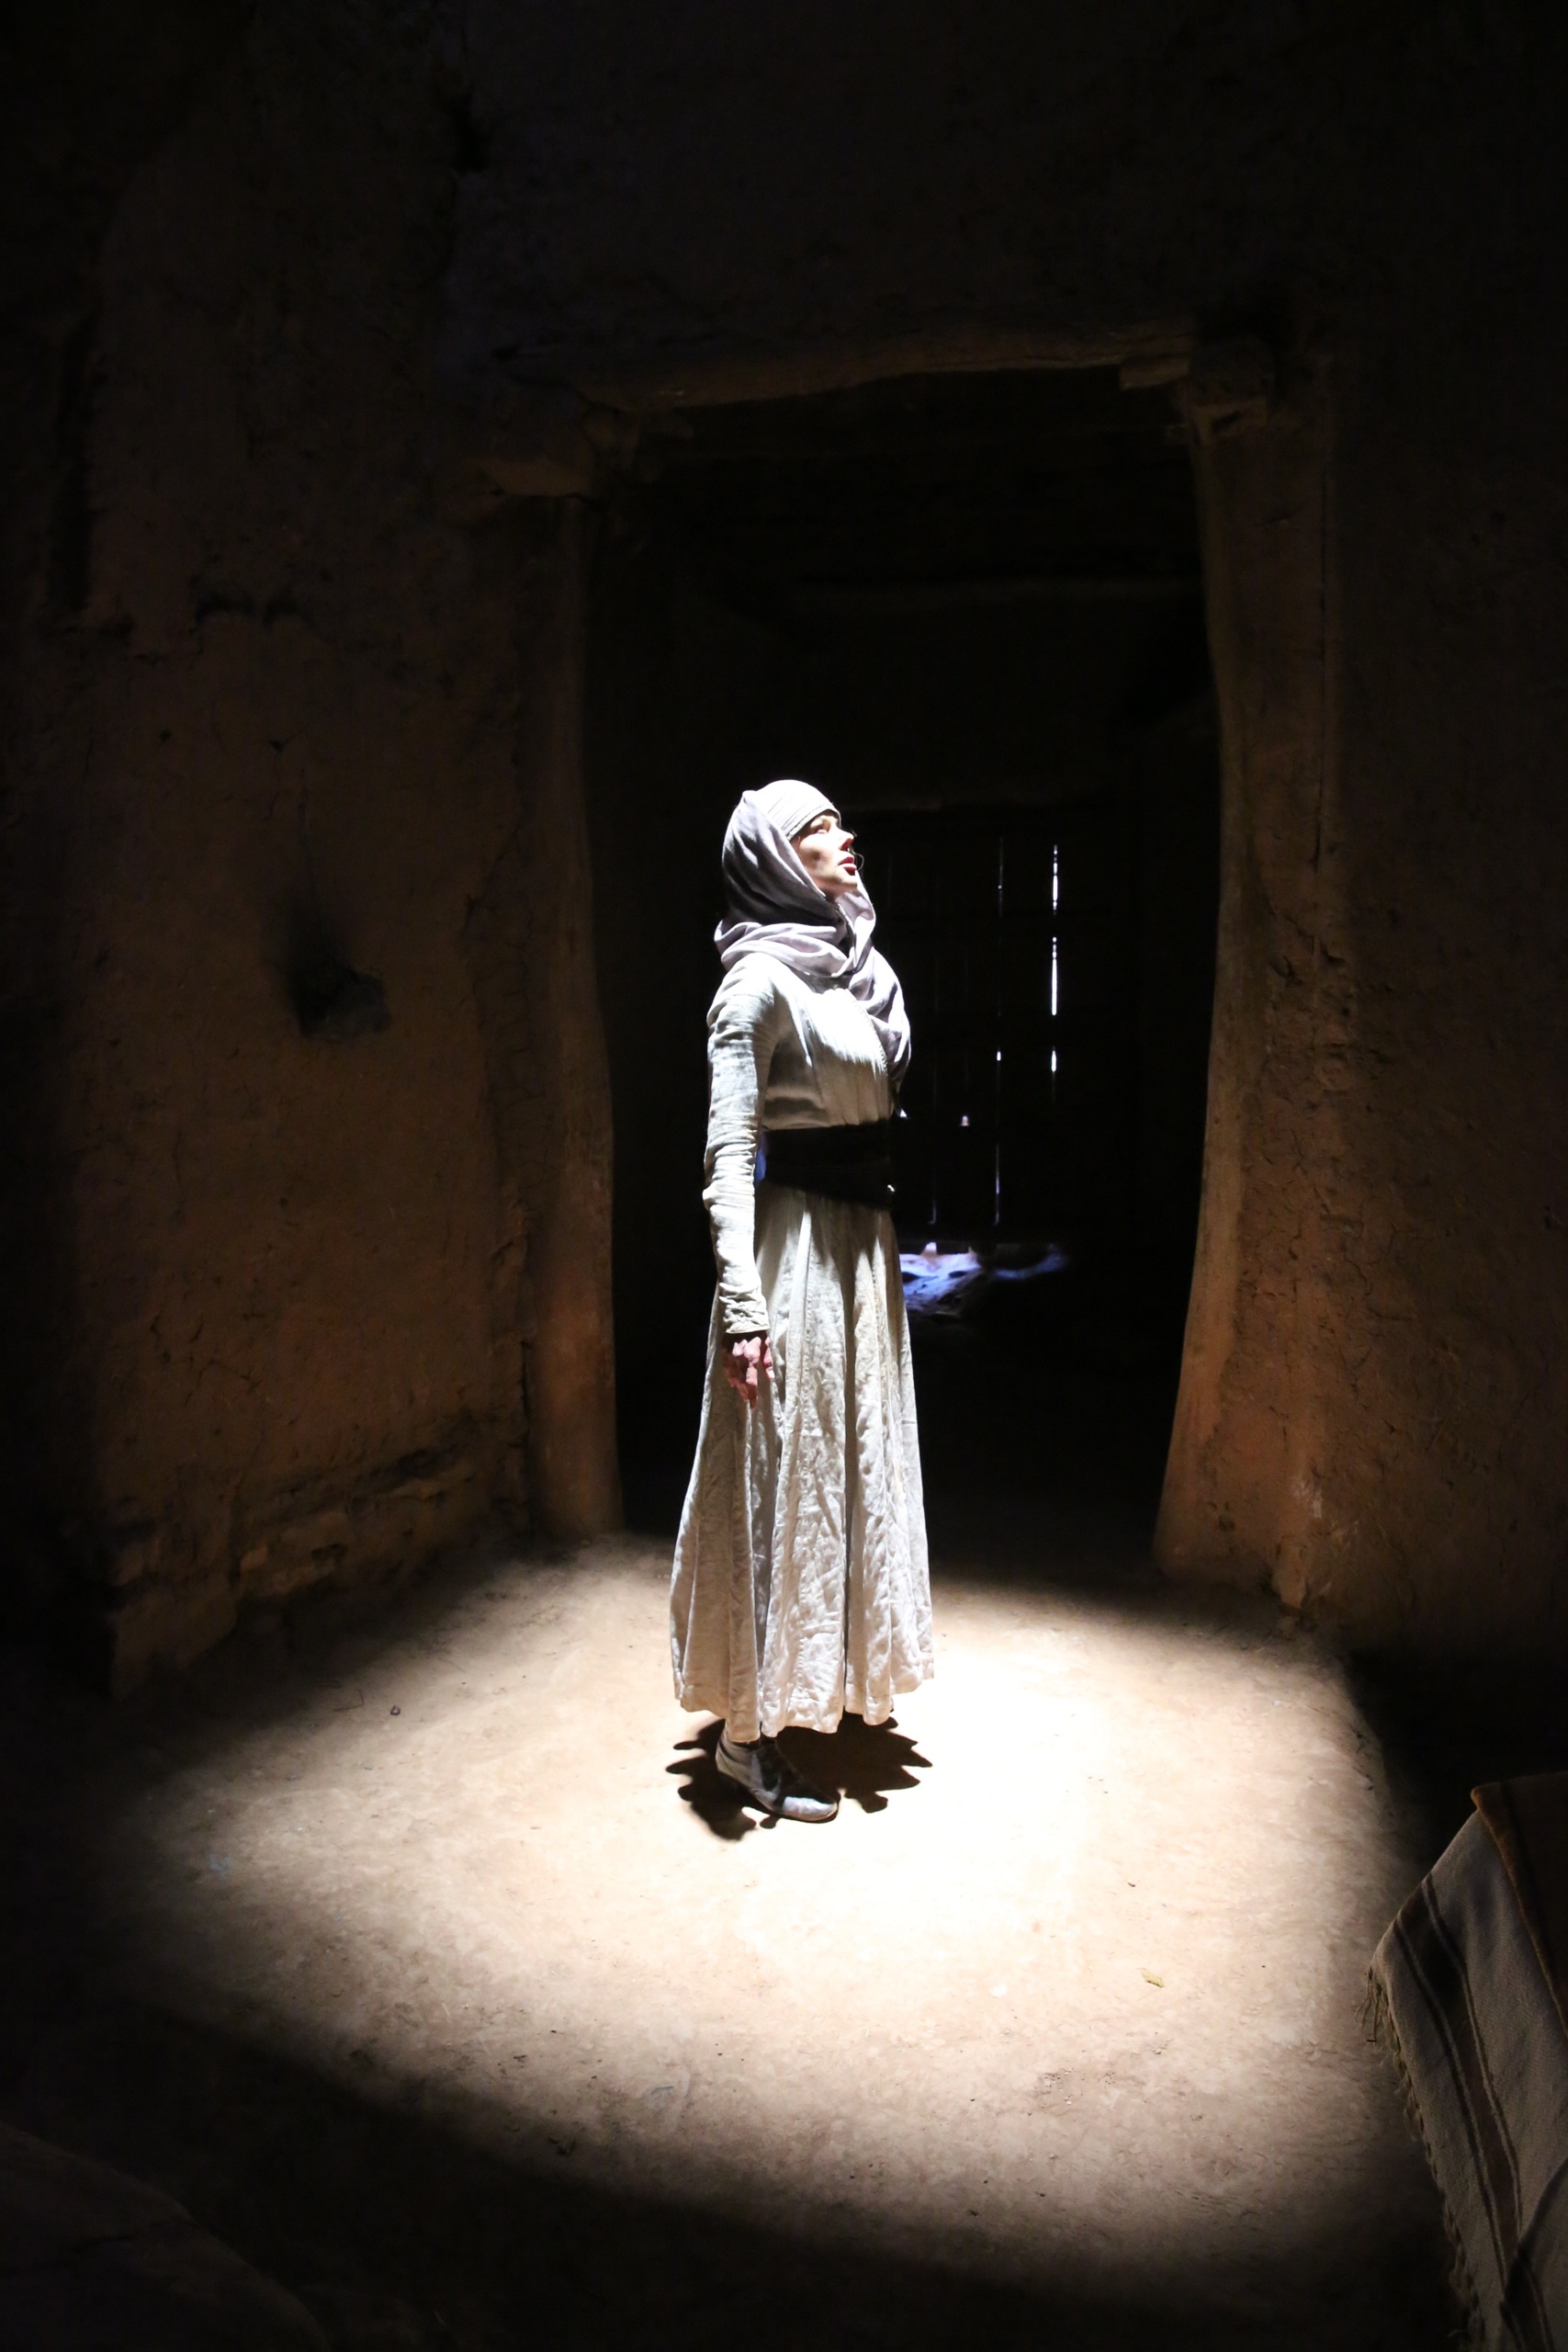 Eine Frau steht in einem dunklen Raum im Schein eines hellen, von oben hereinscheinenden Lichtes. Sie trägt ein helles Kleid und ein Kopftuch.